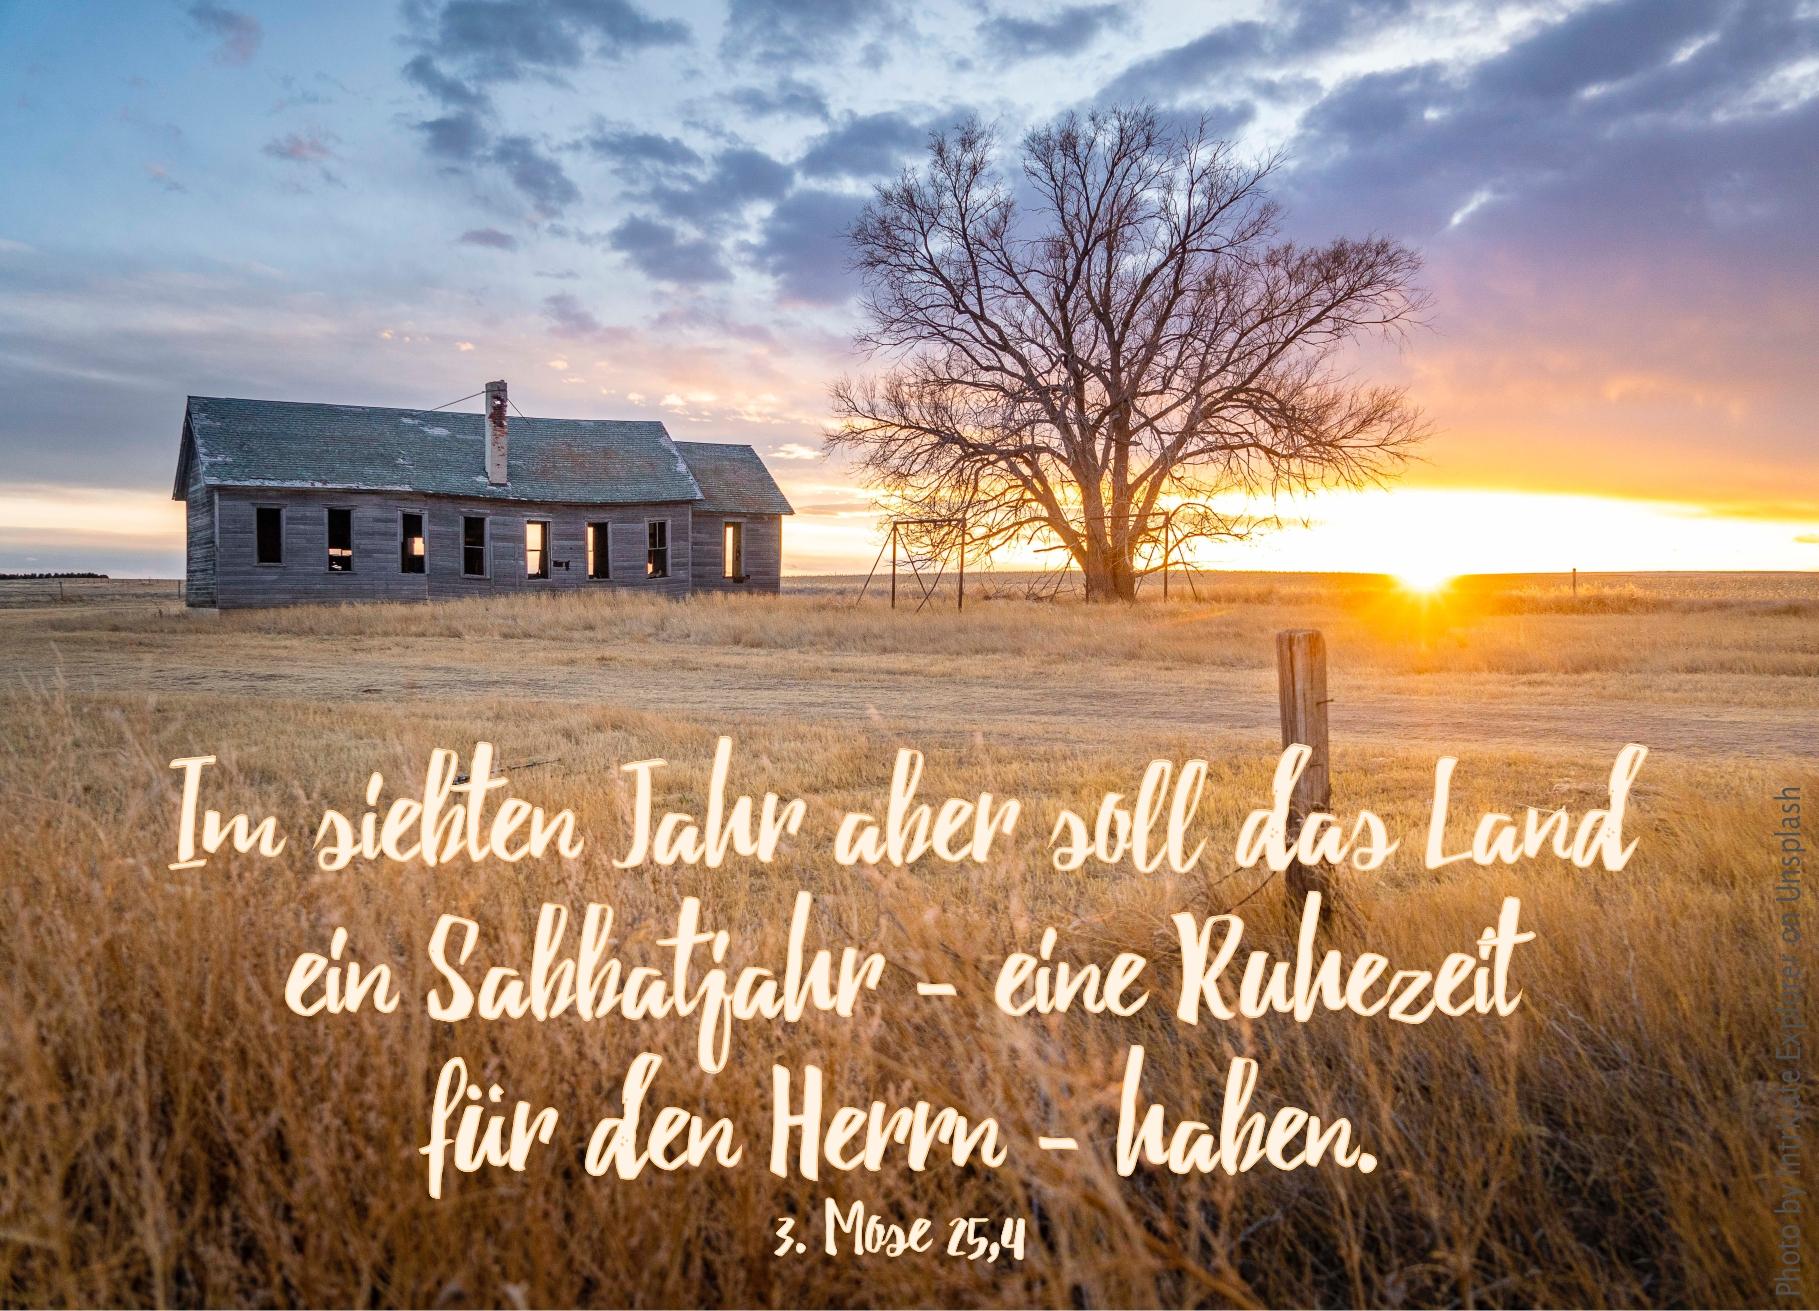 alt="altes_farmhaus_auf_weitem_feld_erwartet_bibelhoerbuch_glaube_der_berge_versetzt"